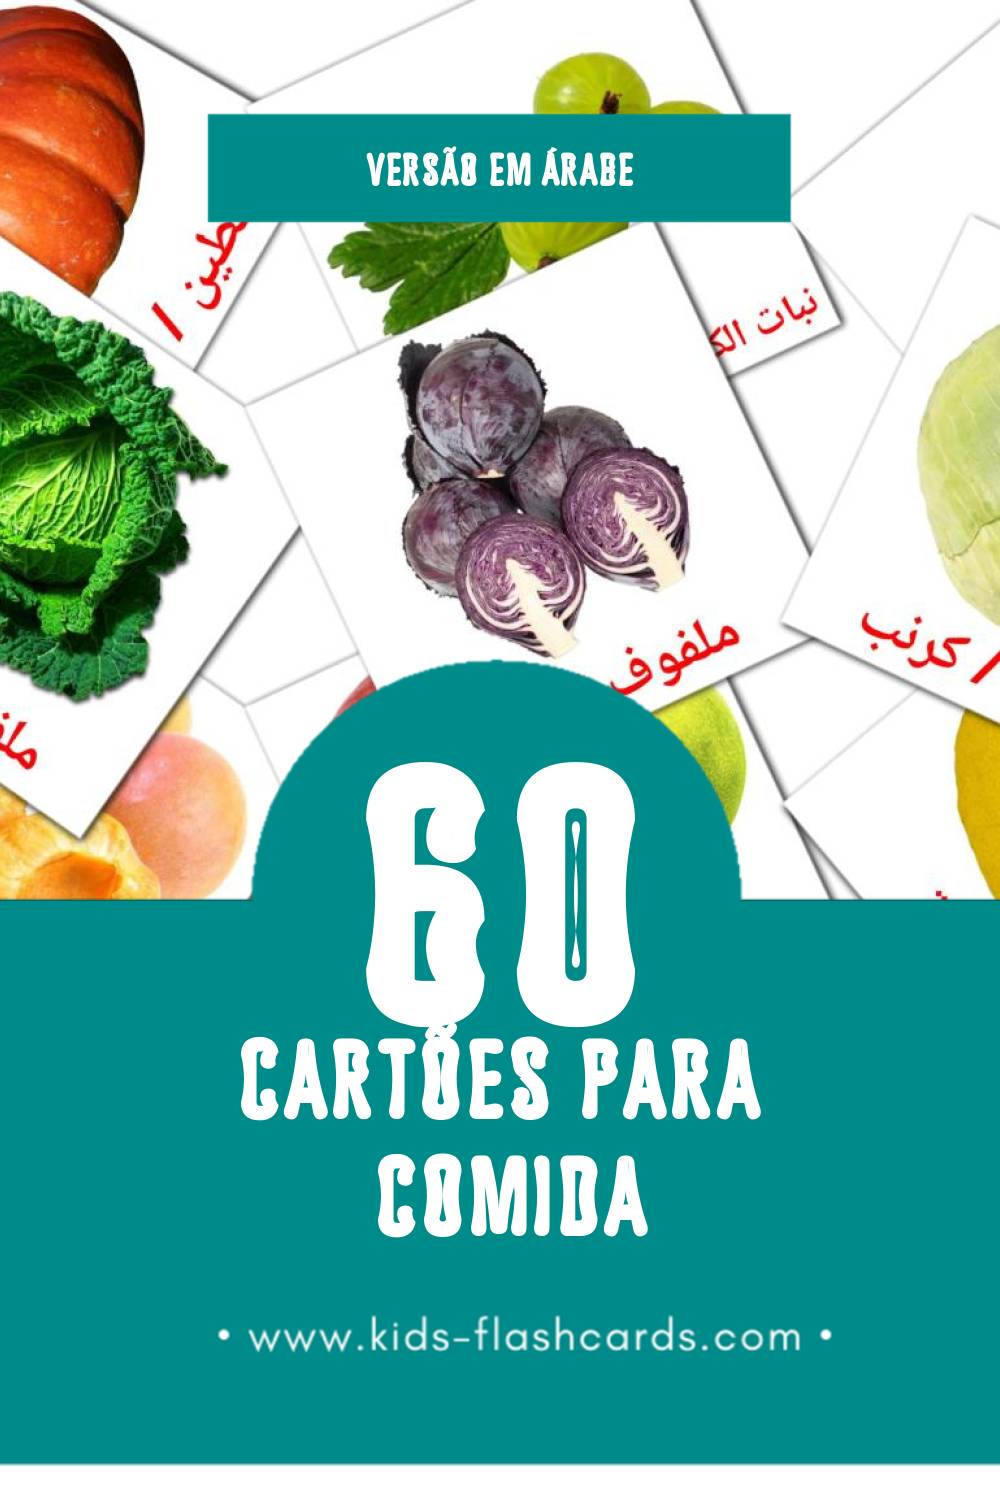 Flashcards de طعام Visuais para Toddlers (60 cartões em Árabe)